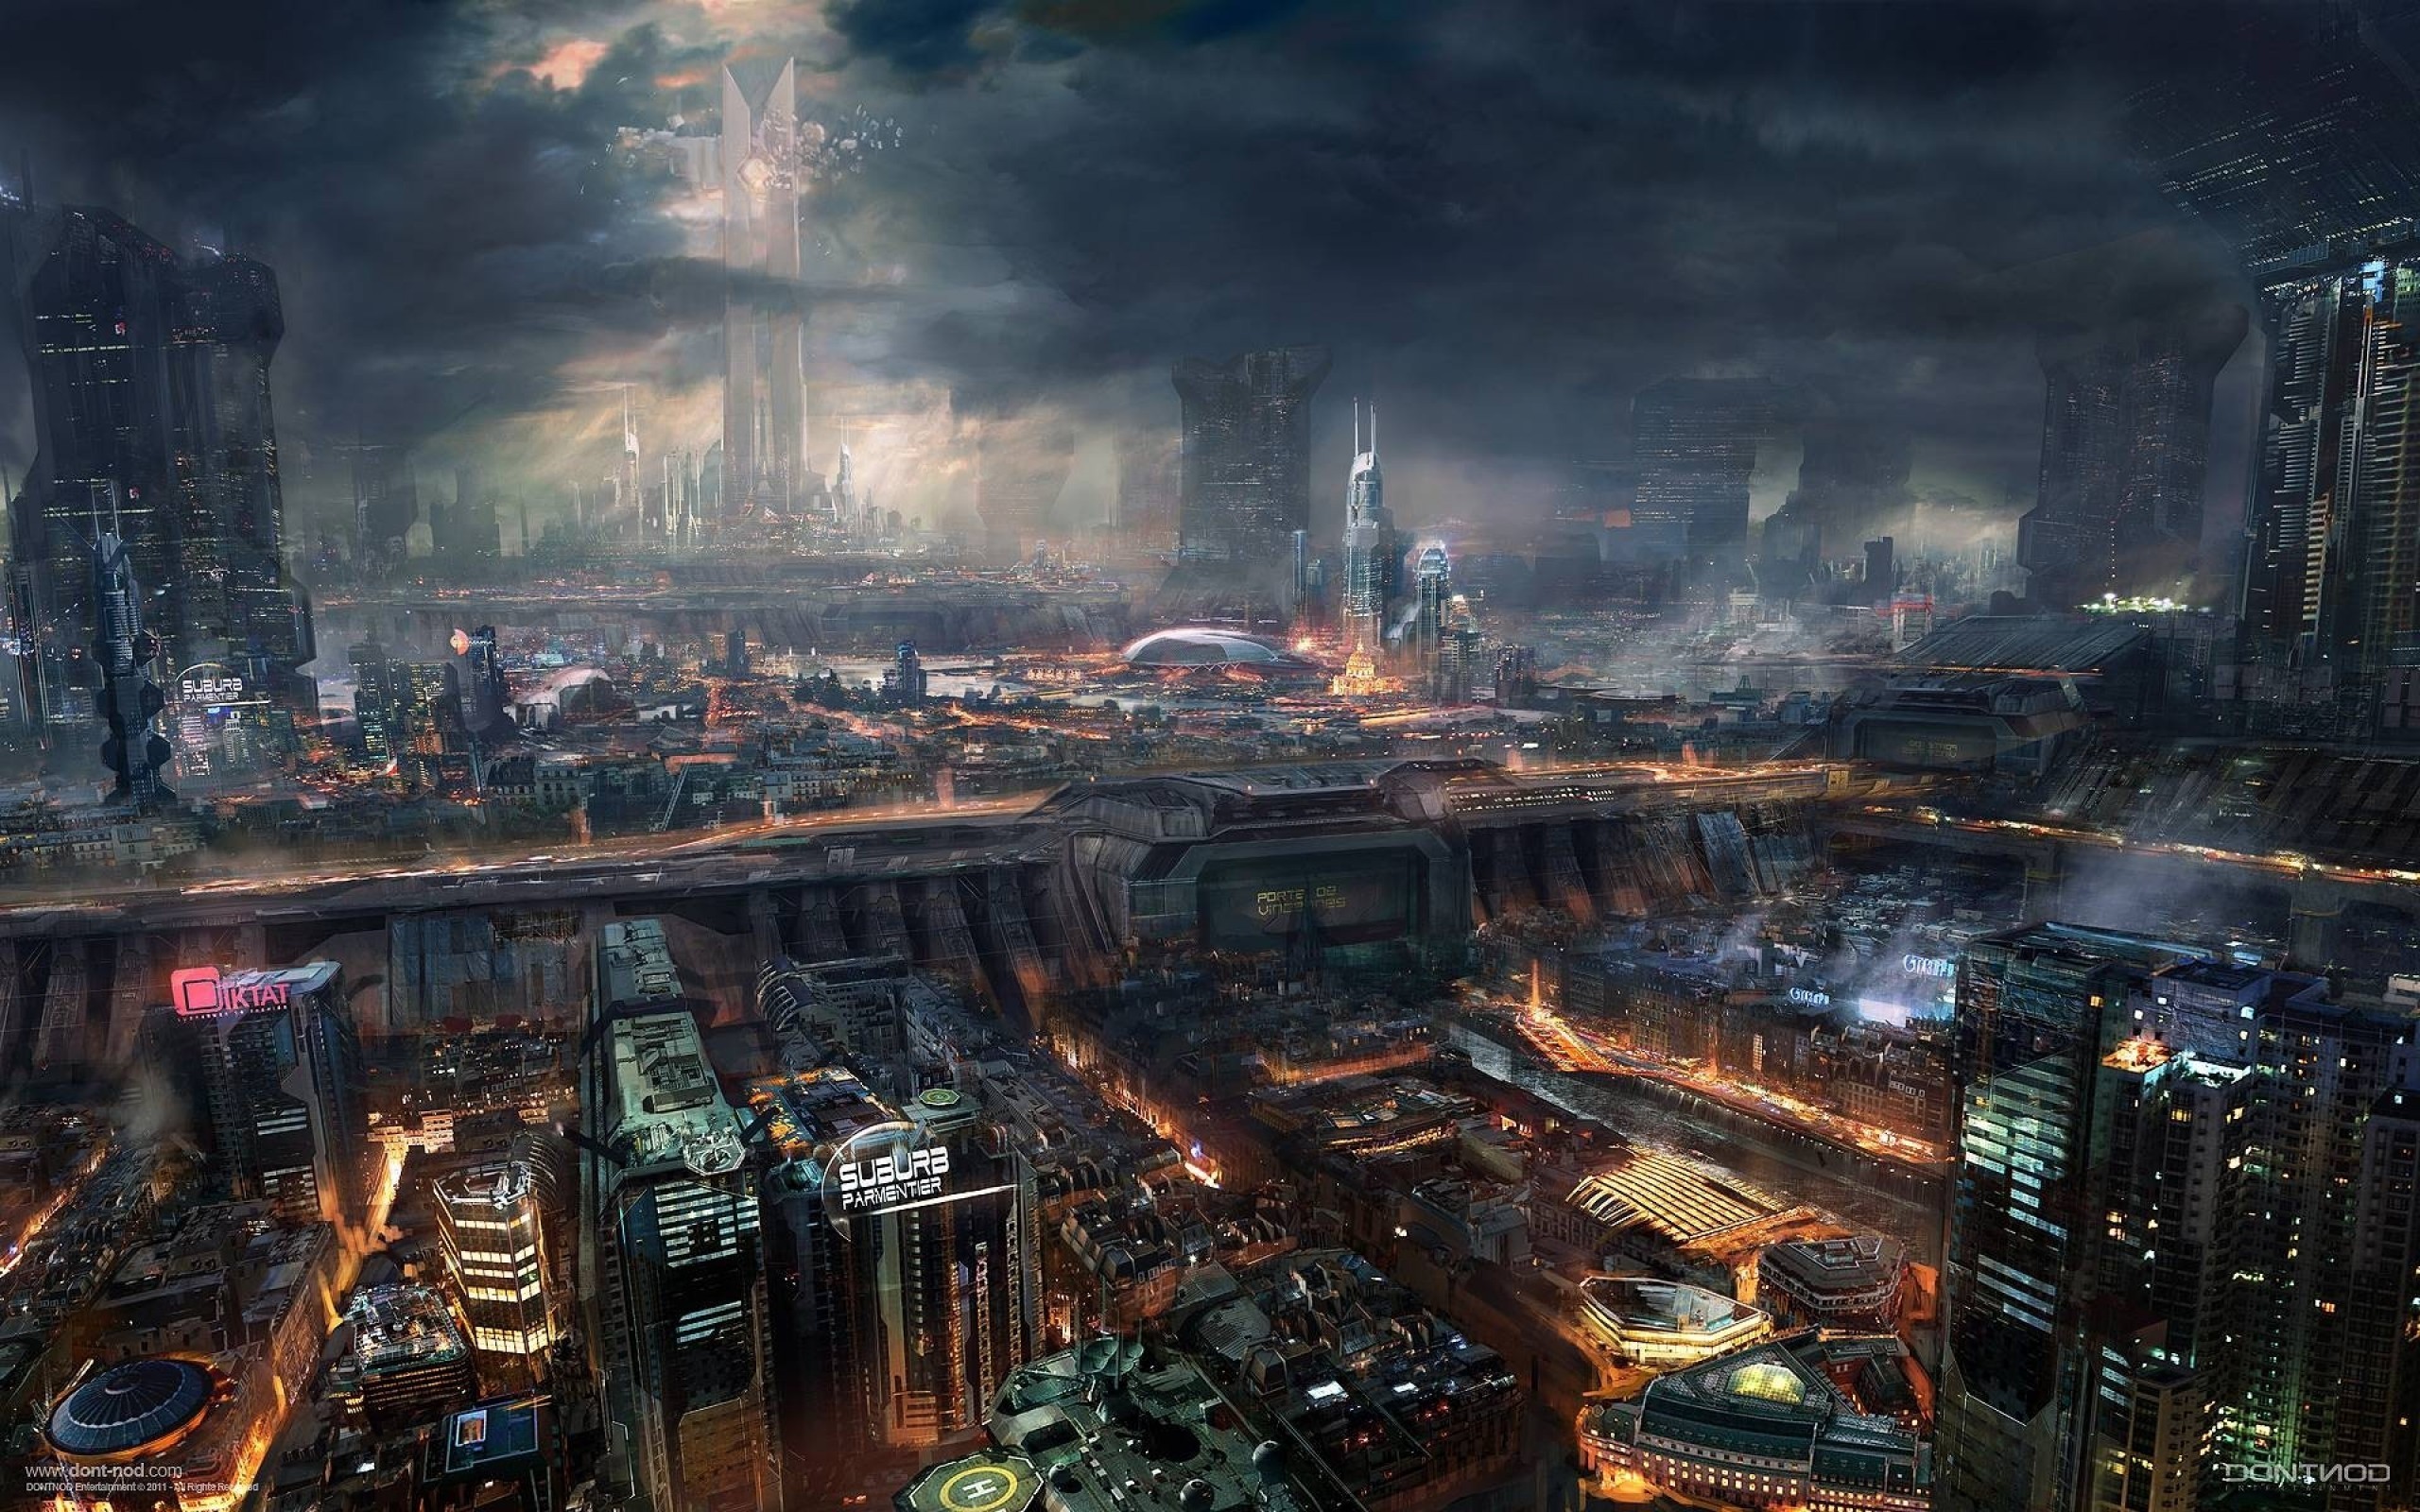 Futuristic City, Cyberpunk, Skyscrapers, Dark, Industrial, Fi City